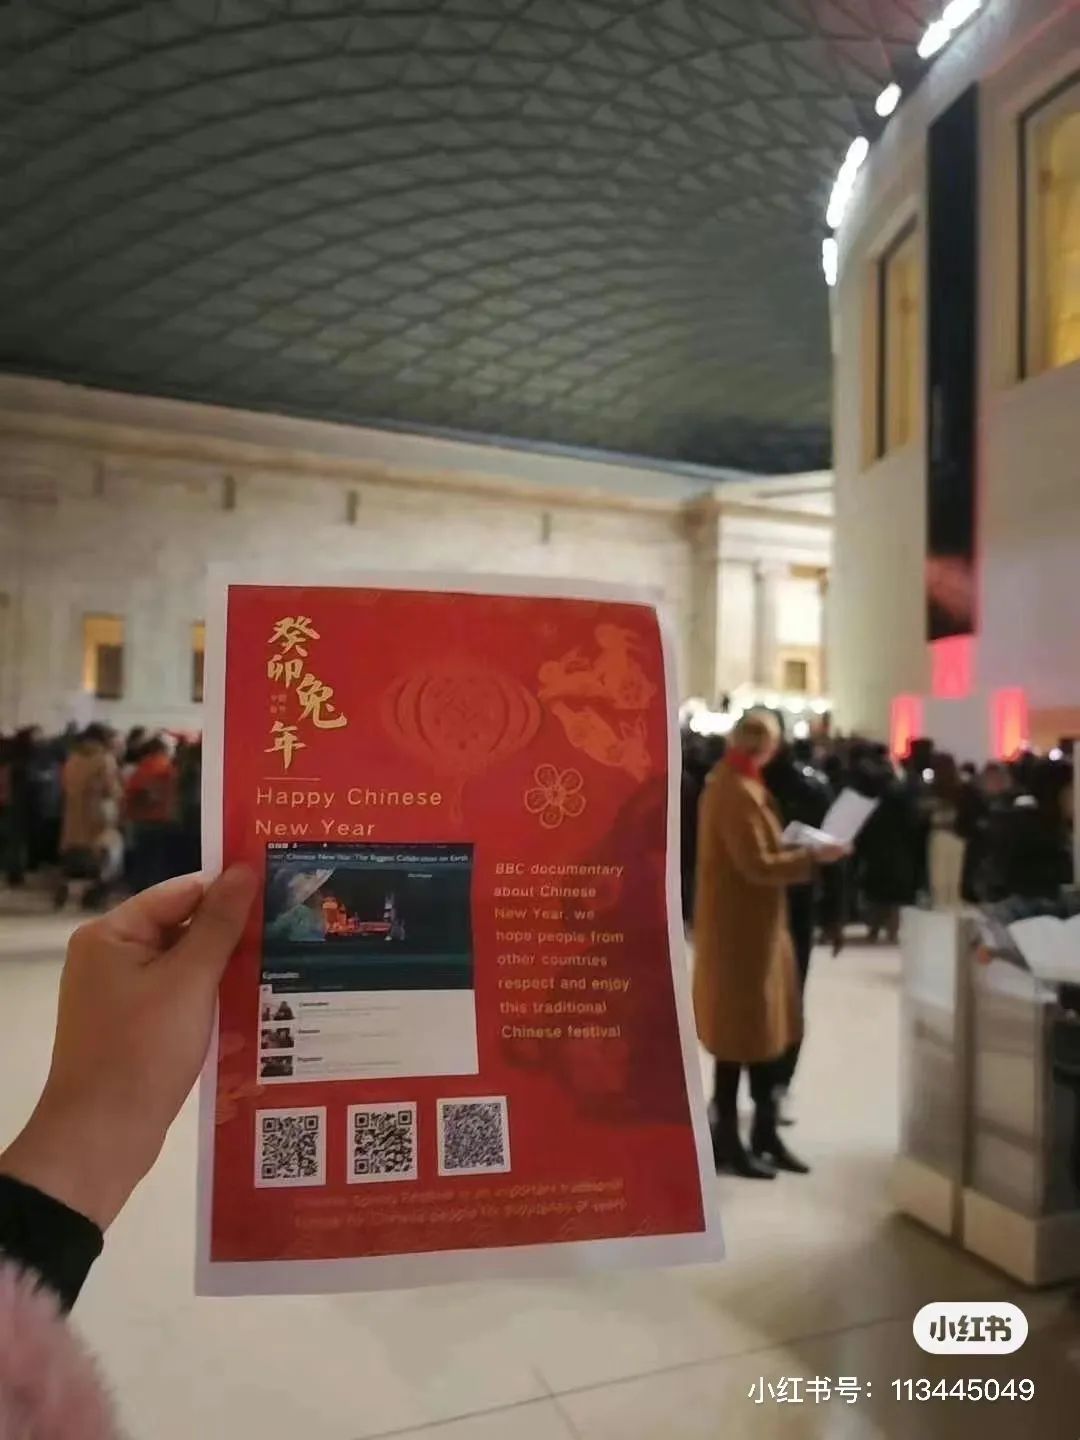 在大英博物馆为中国春节正名，写着“韩国新年”的官推已被删除  社会 第16张